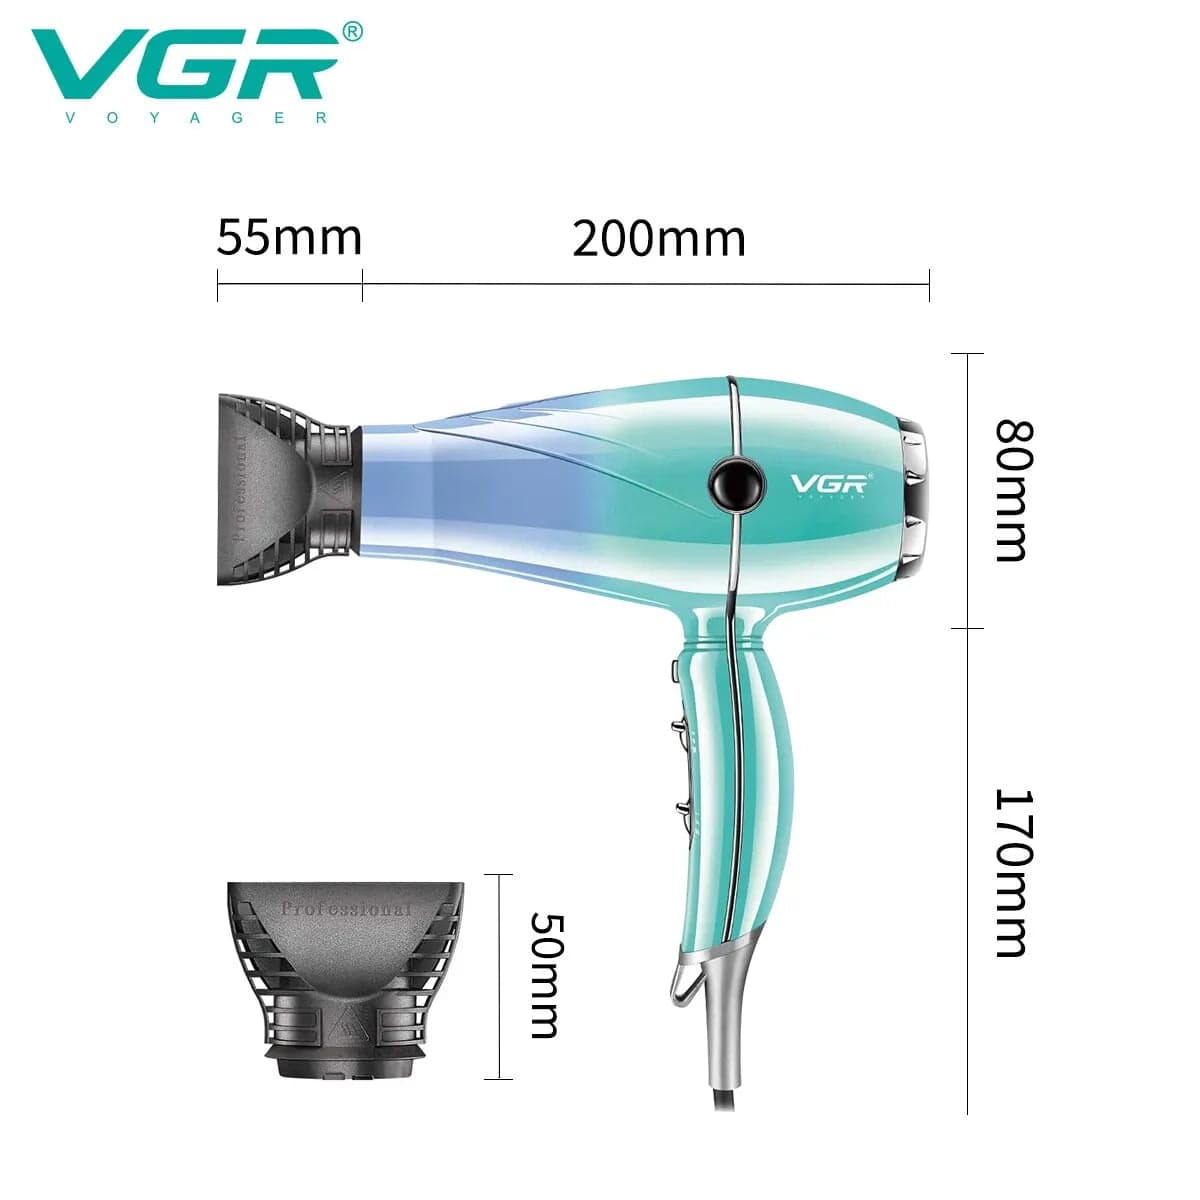 VGR V-452 High Power Hair Dryer